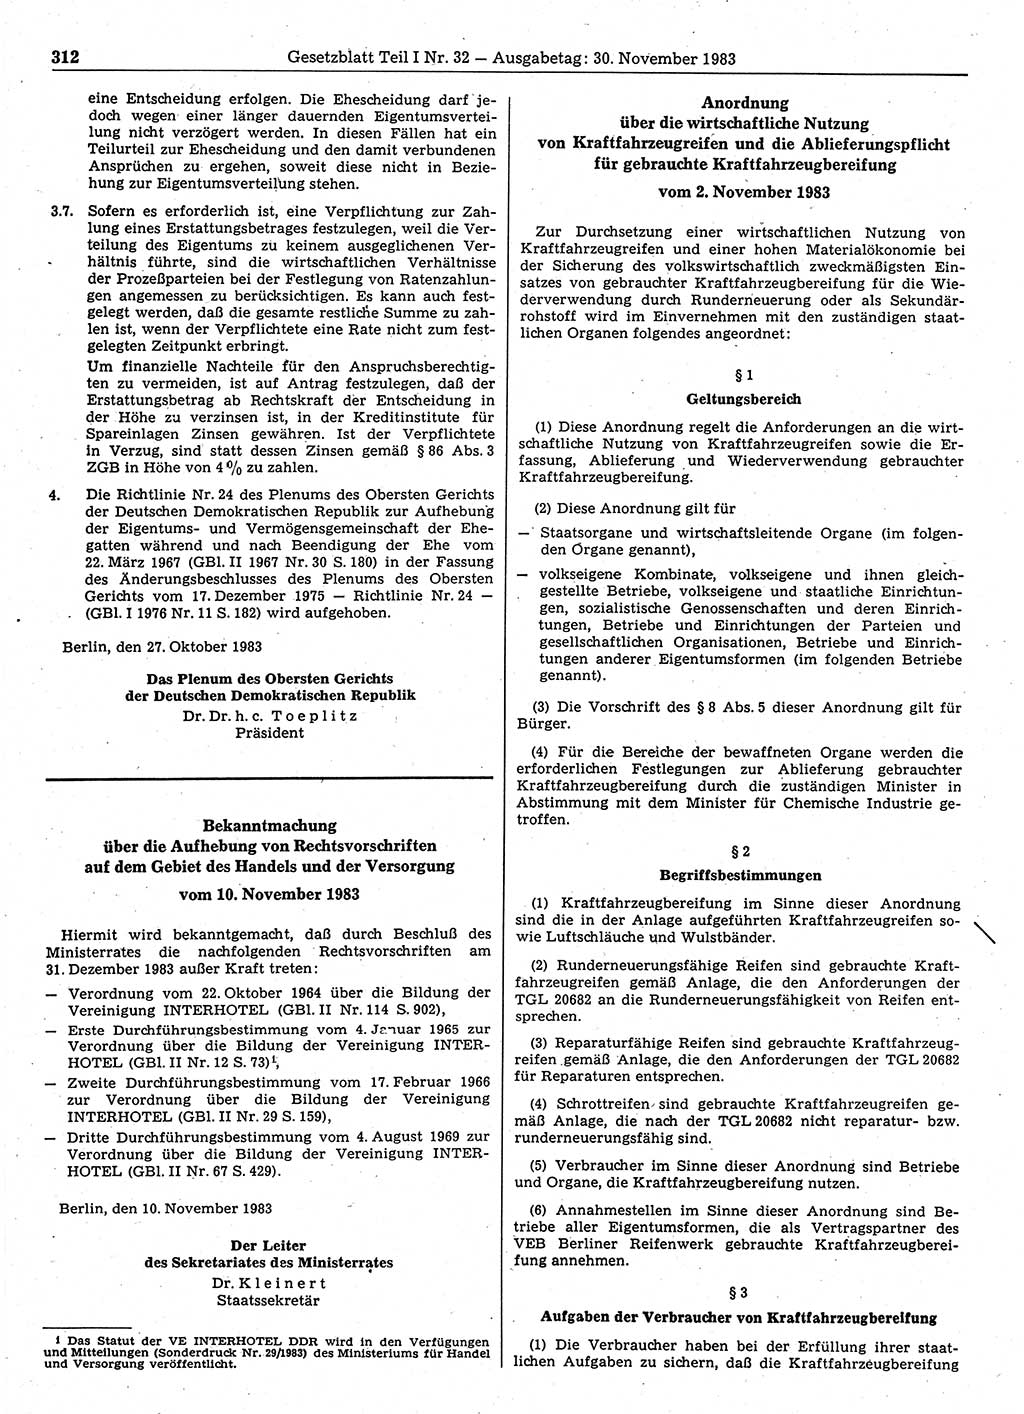 Gesetzblatt (GBl.) der Deutschen Demokratischen Republik (DDR) Teil Ⅰ 1983, Seite 312 (GBl. DDR Ⅰ 1983, S. 312)